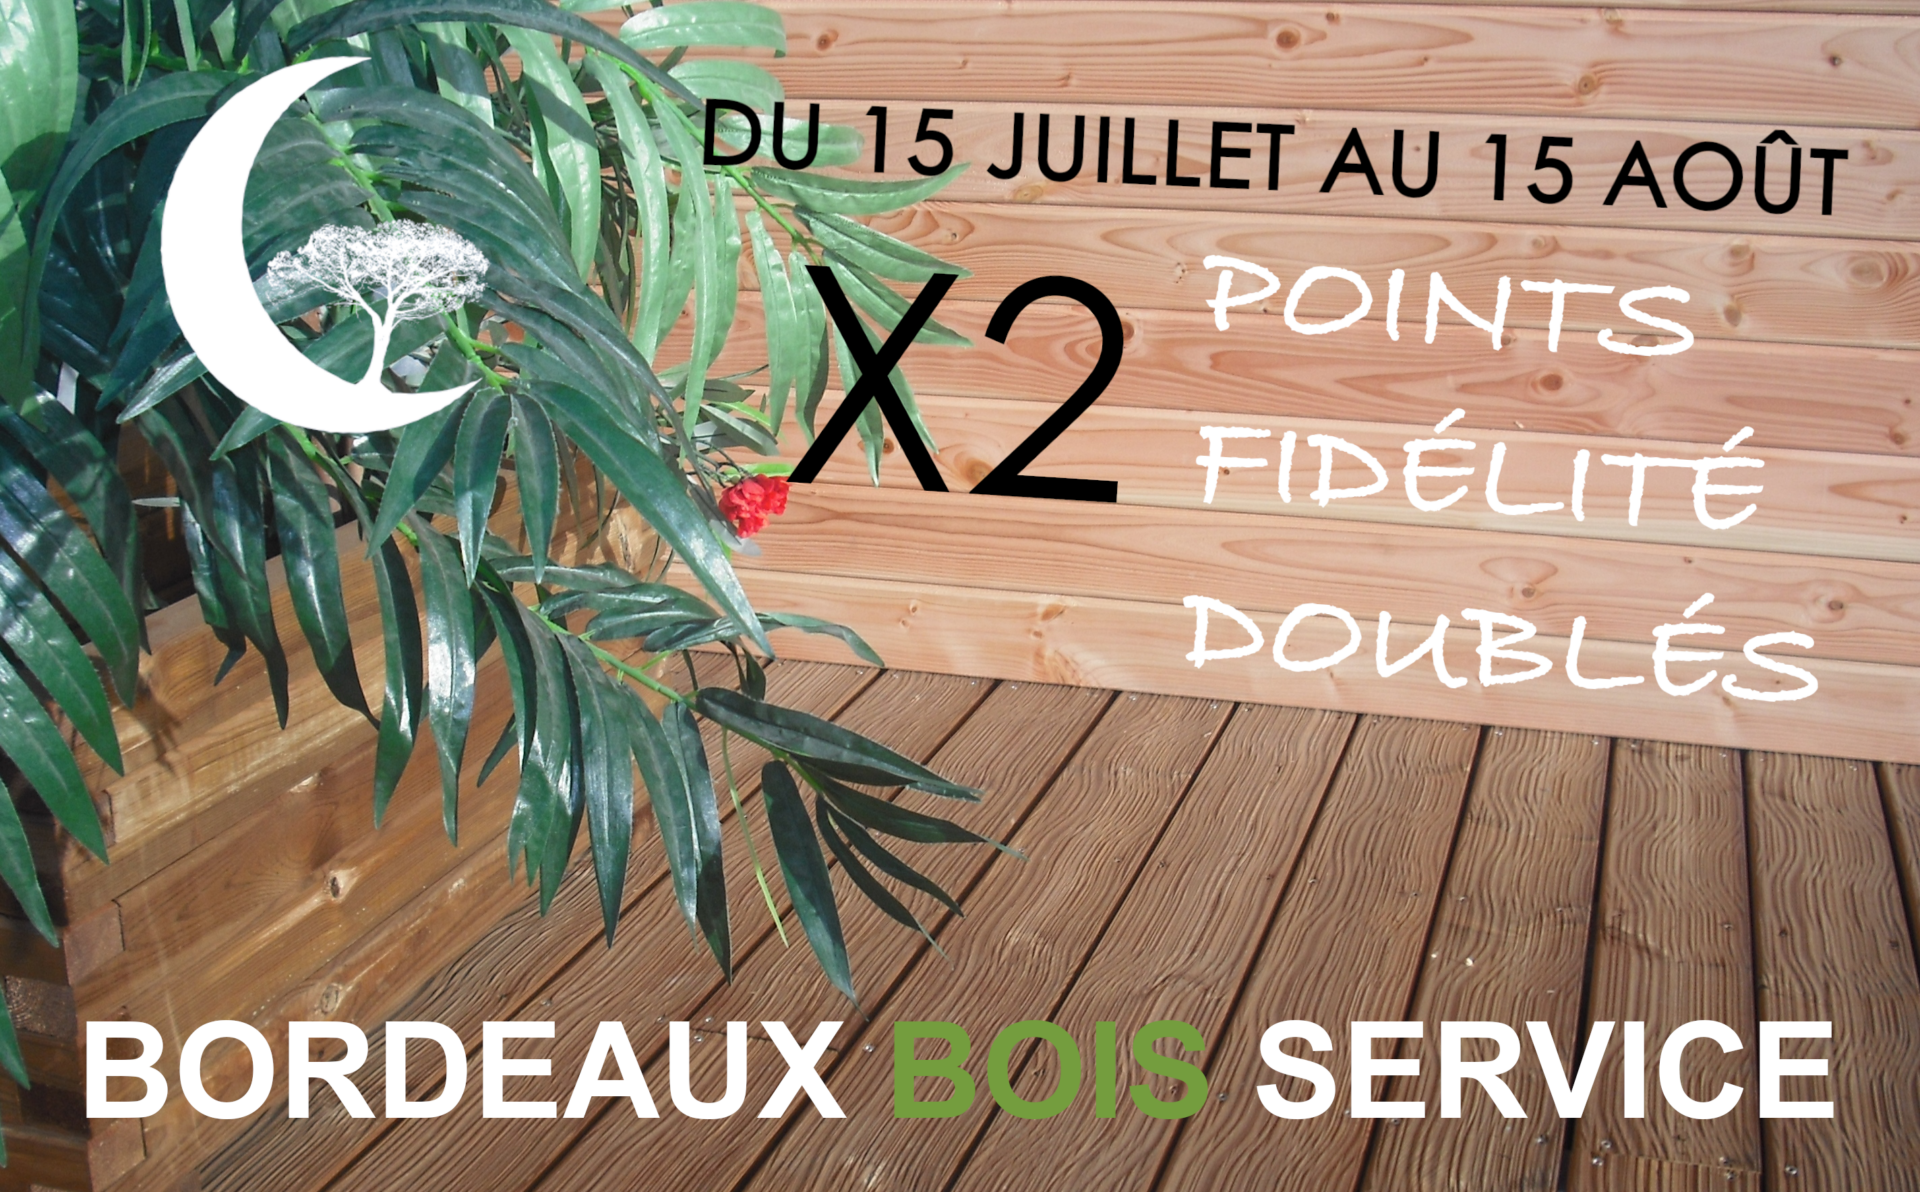 Bordeaux Bois Service Bbs Affiche Bbs Ete 408